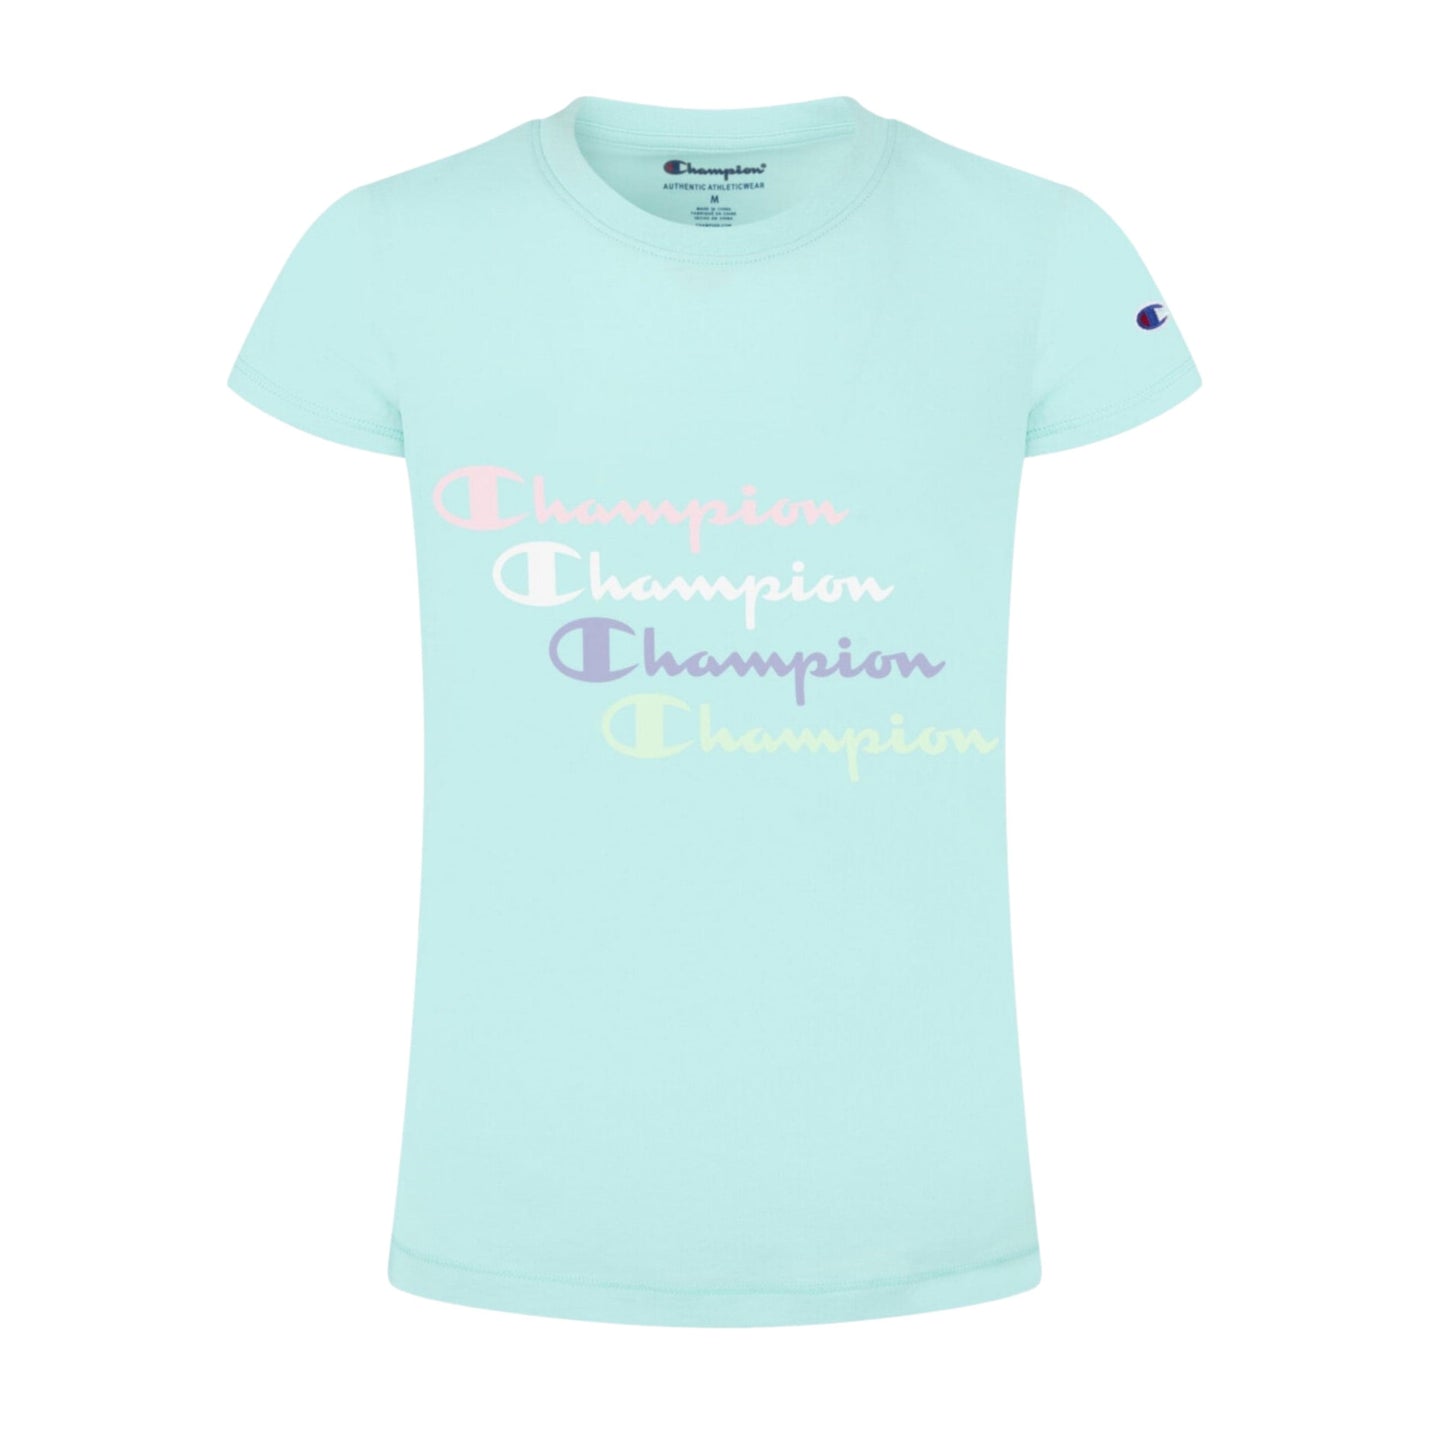 CHAMPION Baby Girl 3 Years / Blue CHAMPION - BABY - Graphic T-shirt